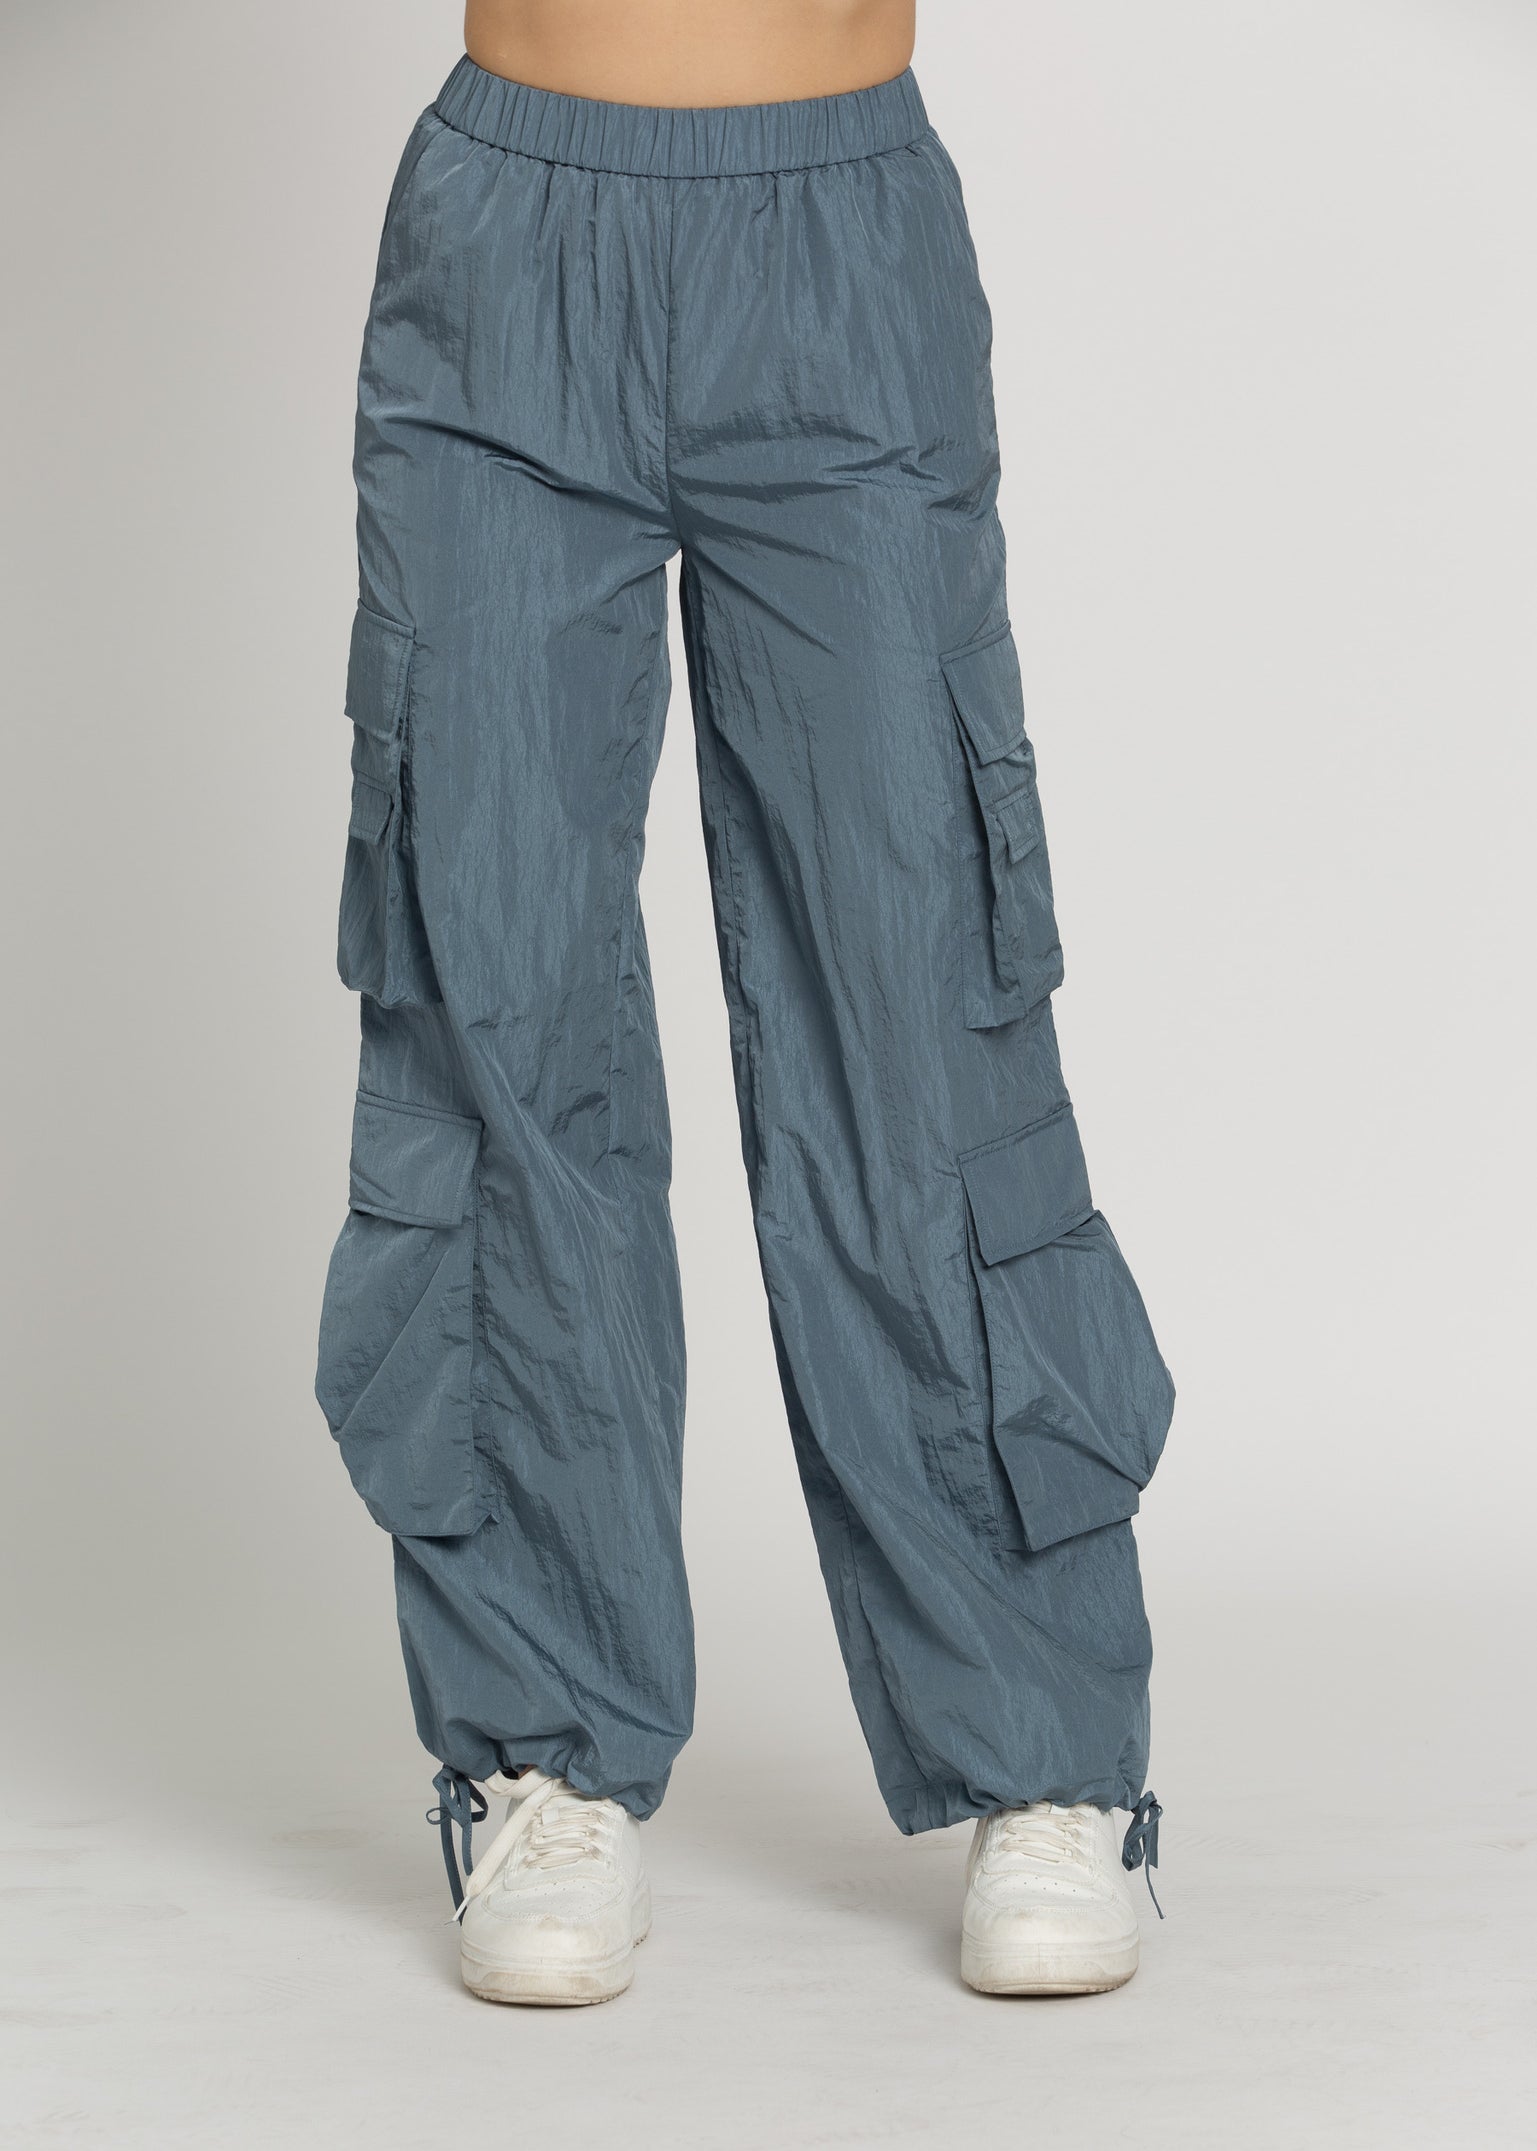 Parachute Pants Goldwomen's Cargo Pants - Summer Parachute Style